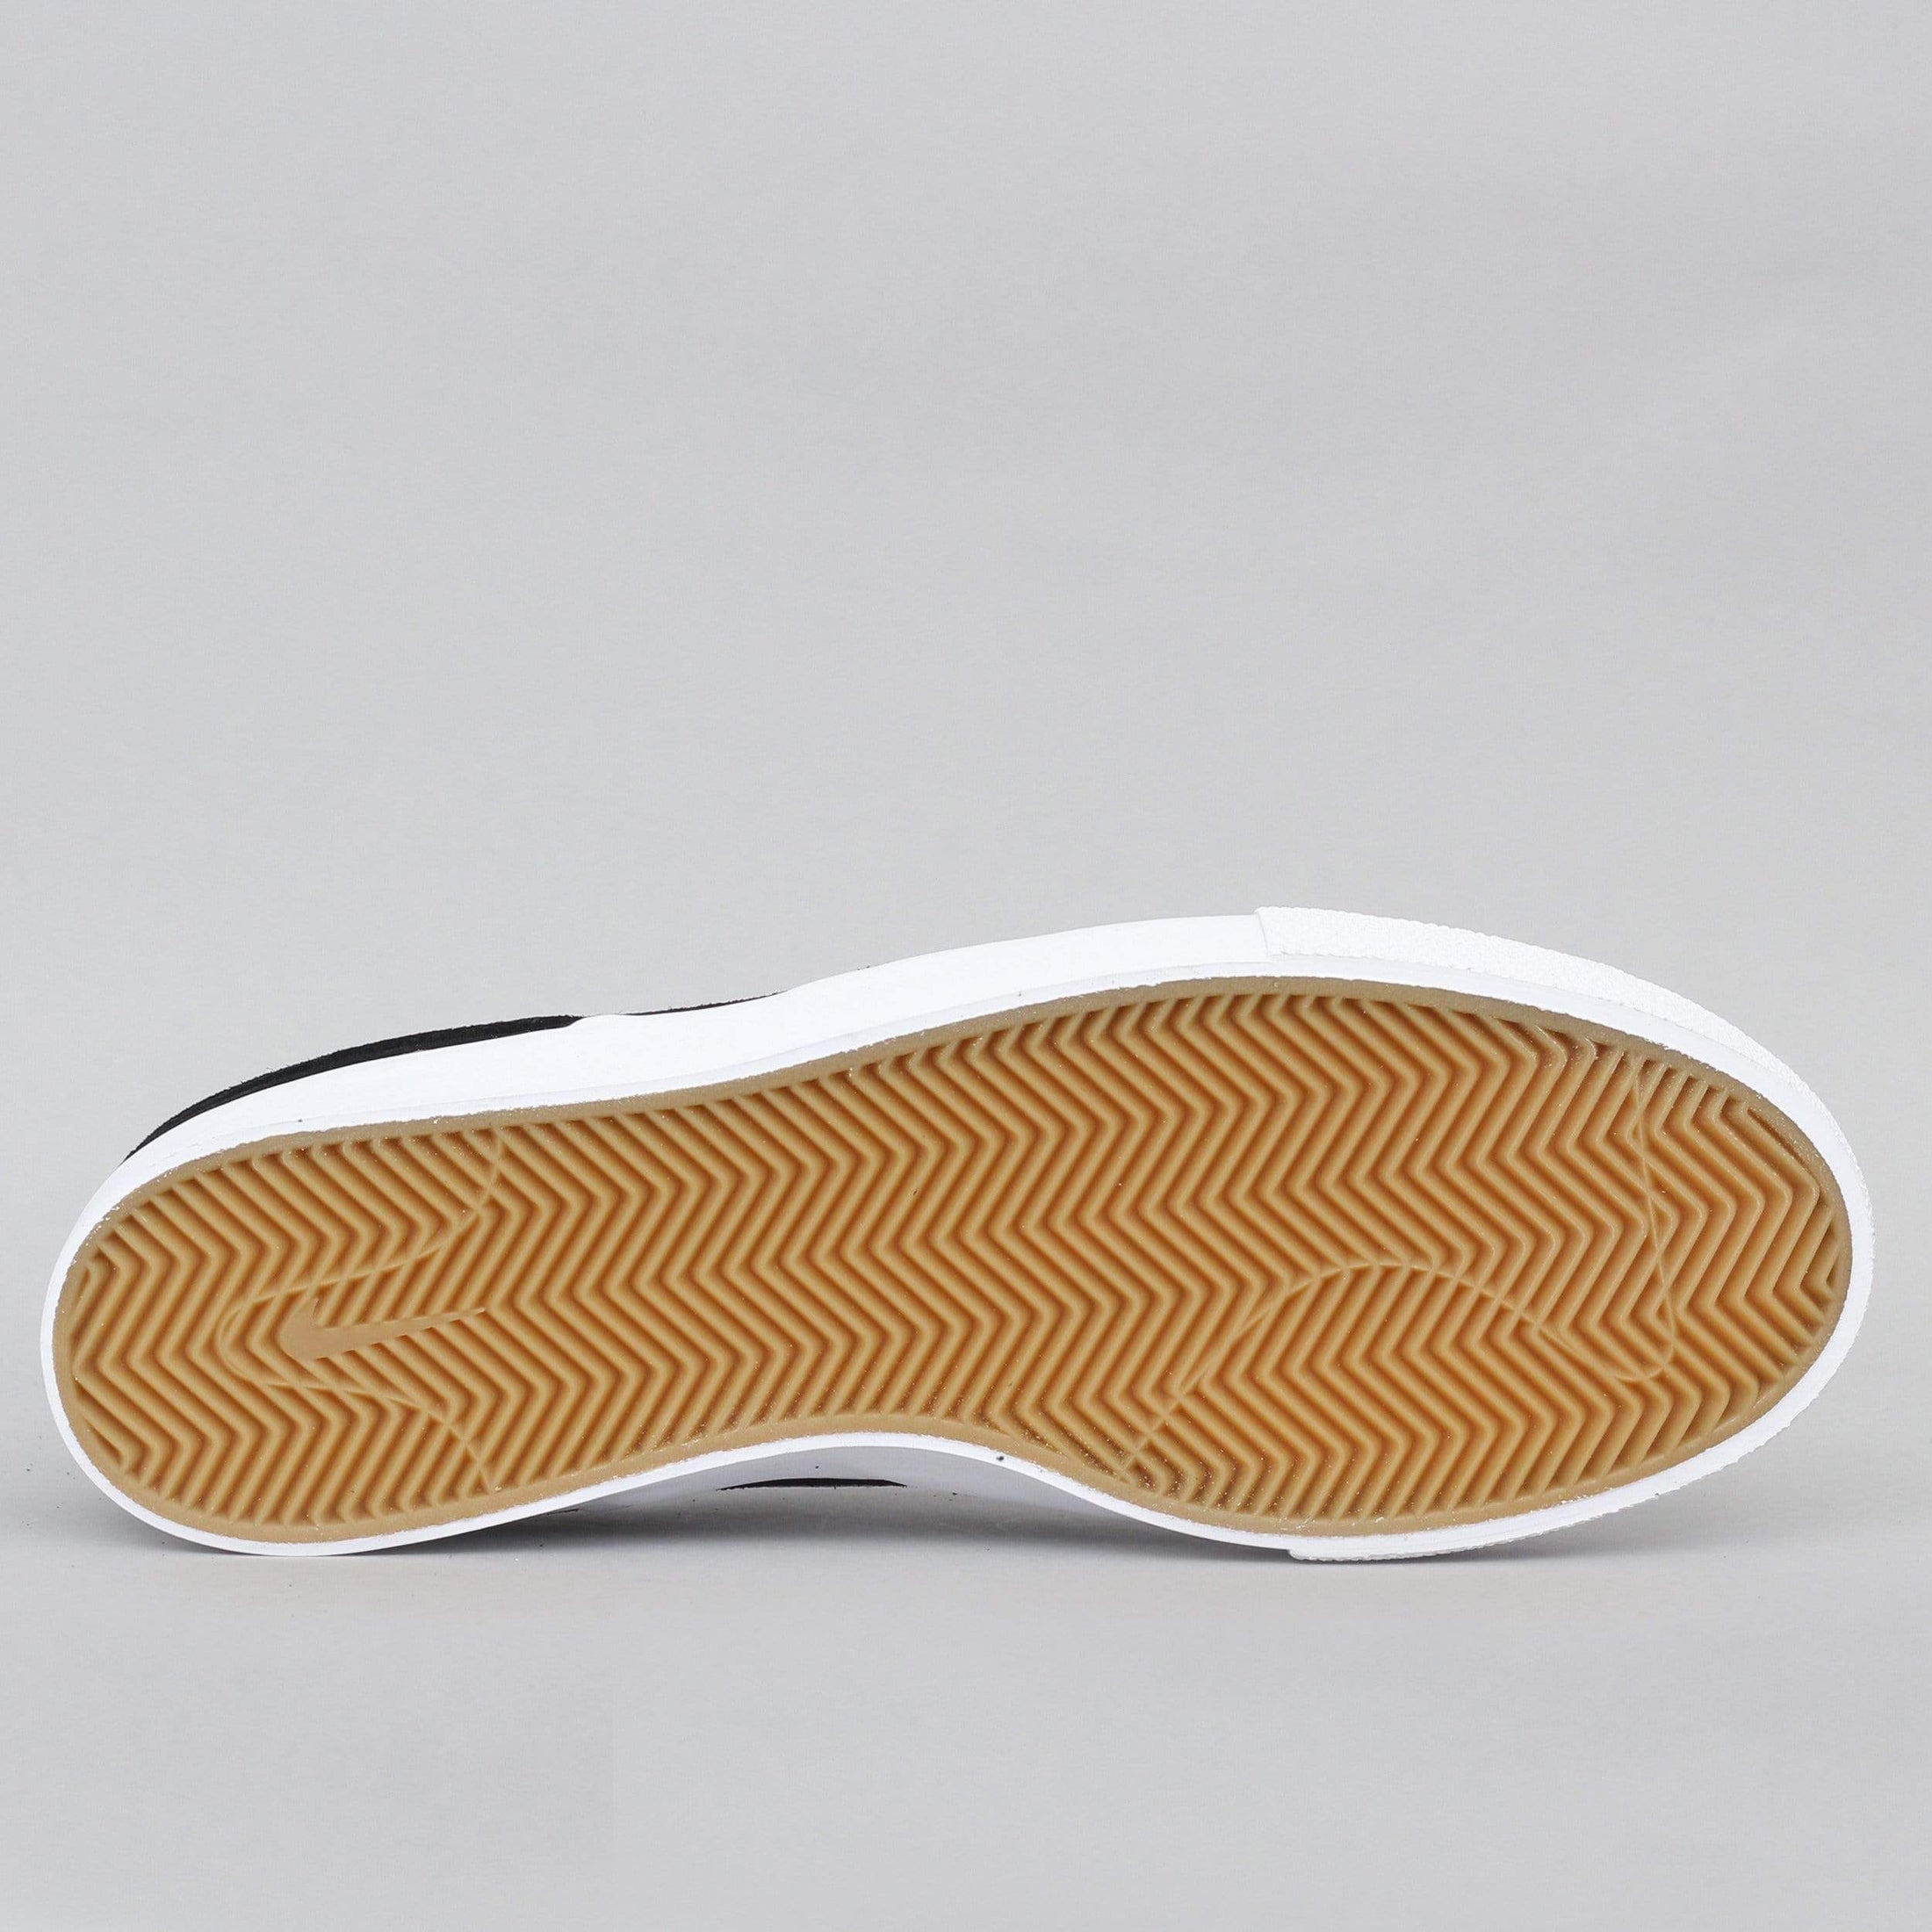 Nike SB Janoski Slip RM Shoes Black / White - White